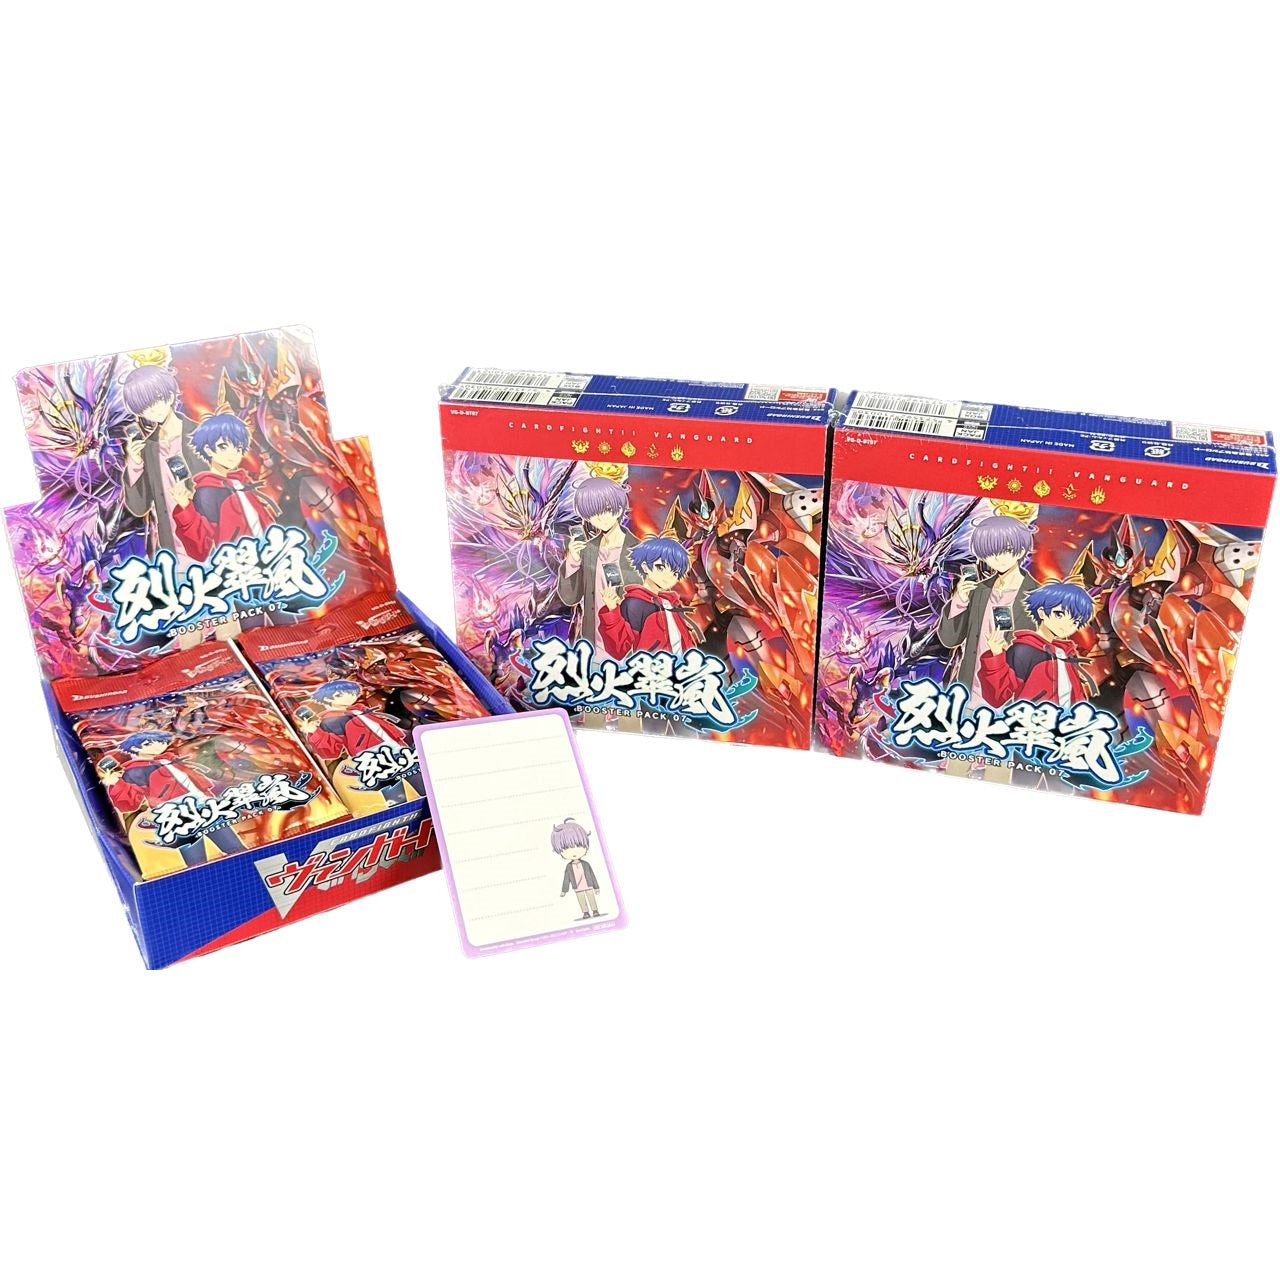 Cardfight!! Vanguard OverDress Booster Pack Vol. 7 "Rekkasuiran" [VG-D-BT07] (Japanese)-Bushiroad-Ace Cards & Collectibles